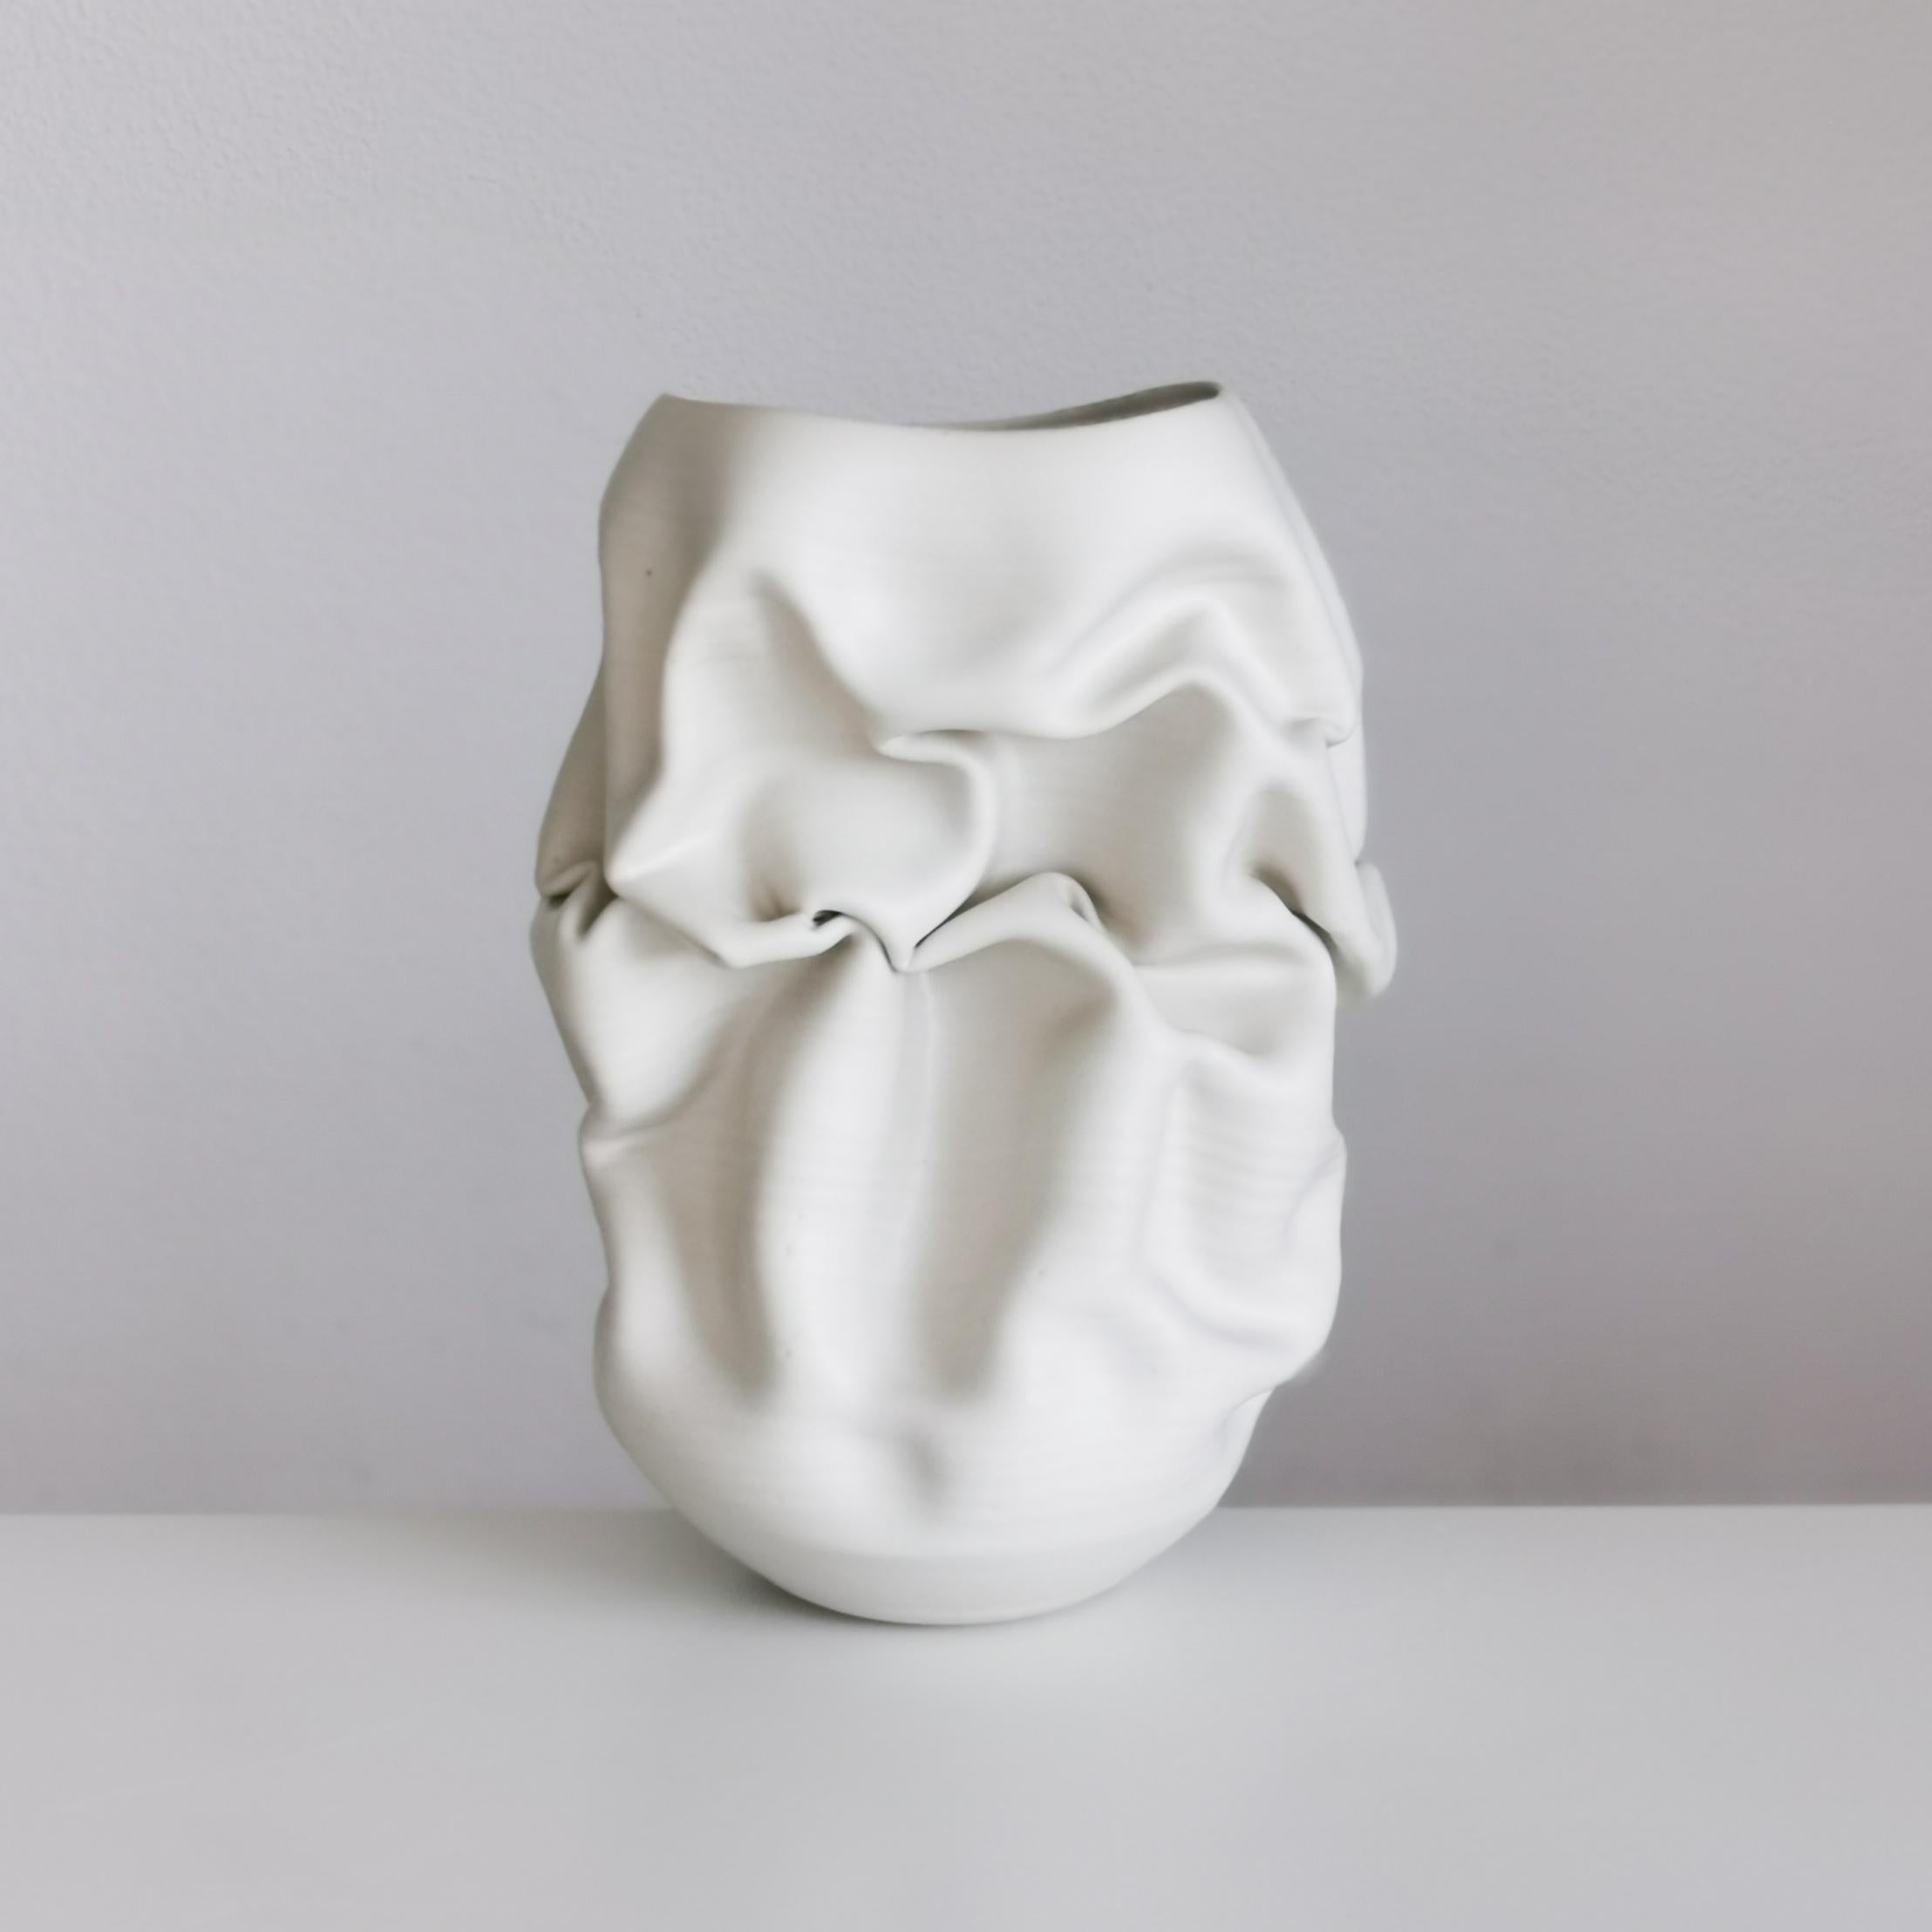 Spanish Ceramic Sculpture Vessel, N. 50 Medium Tall White Crumpled Form, Objet d'Art